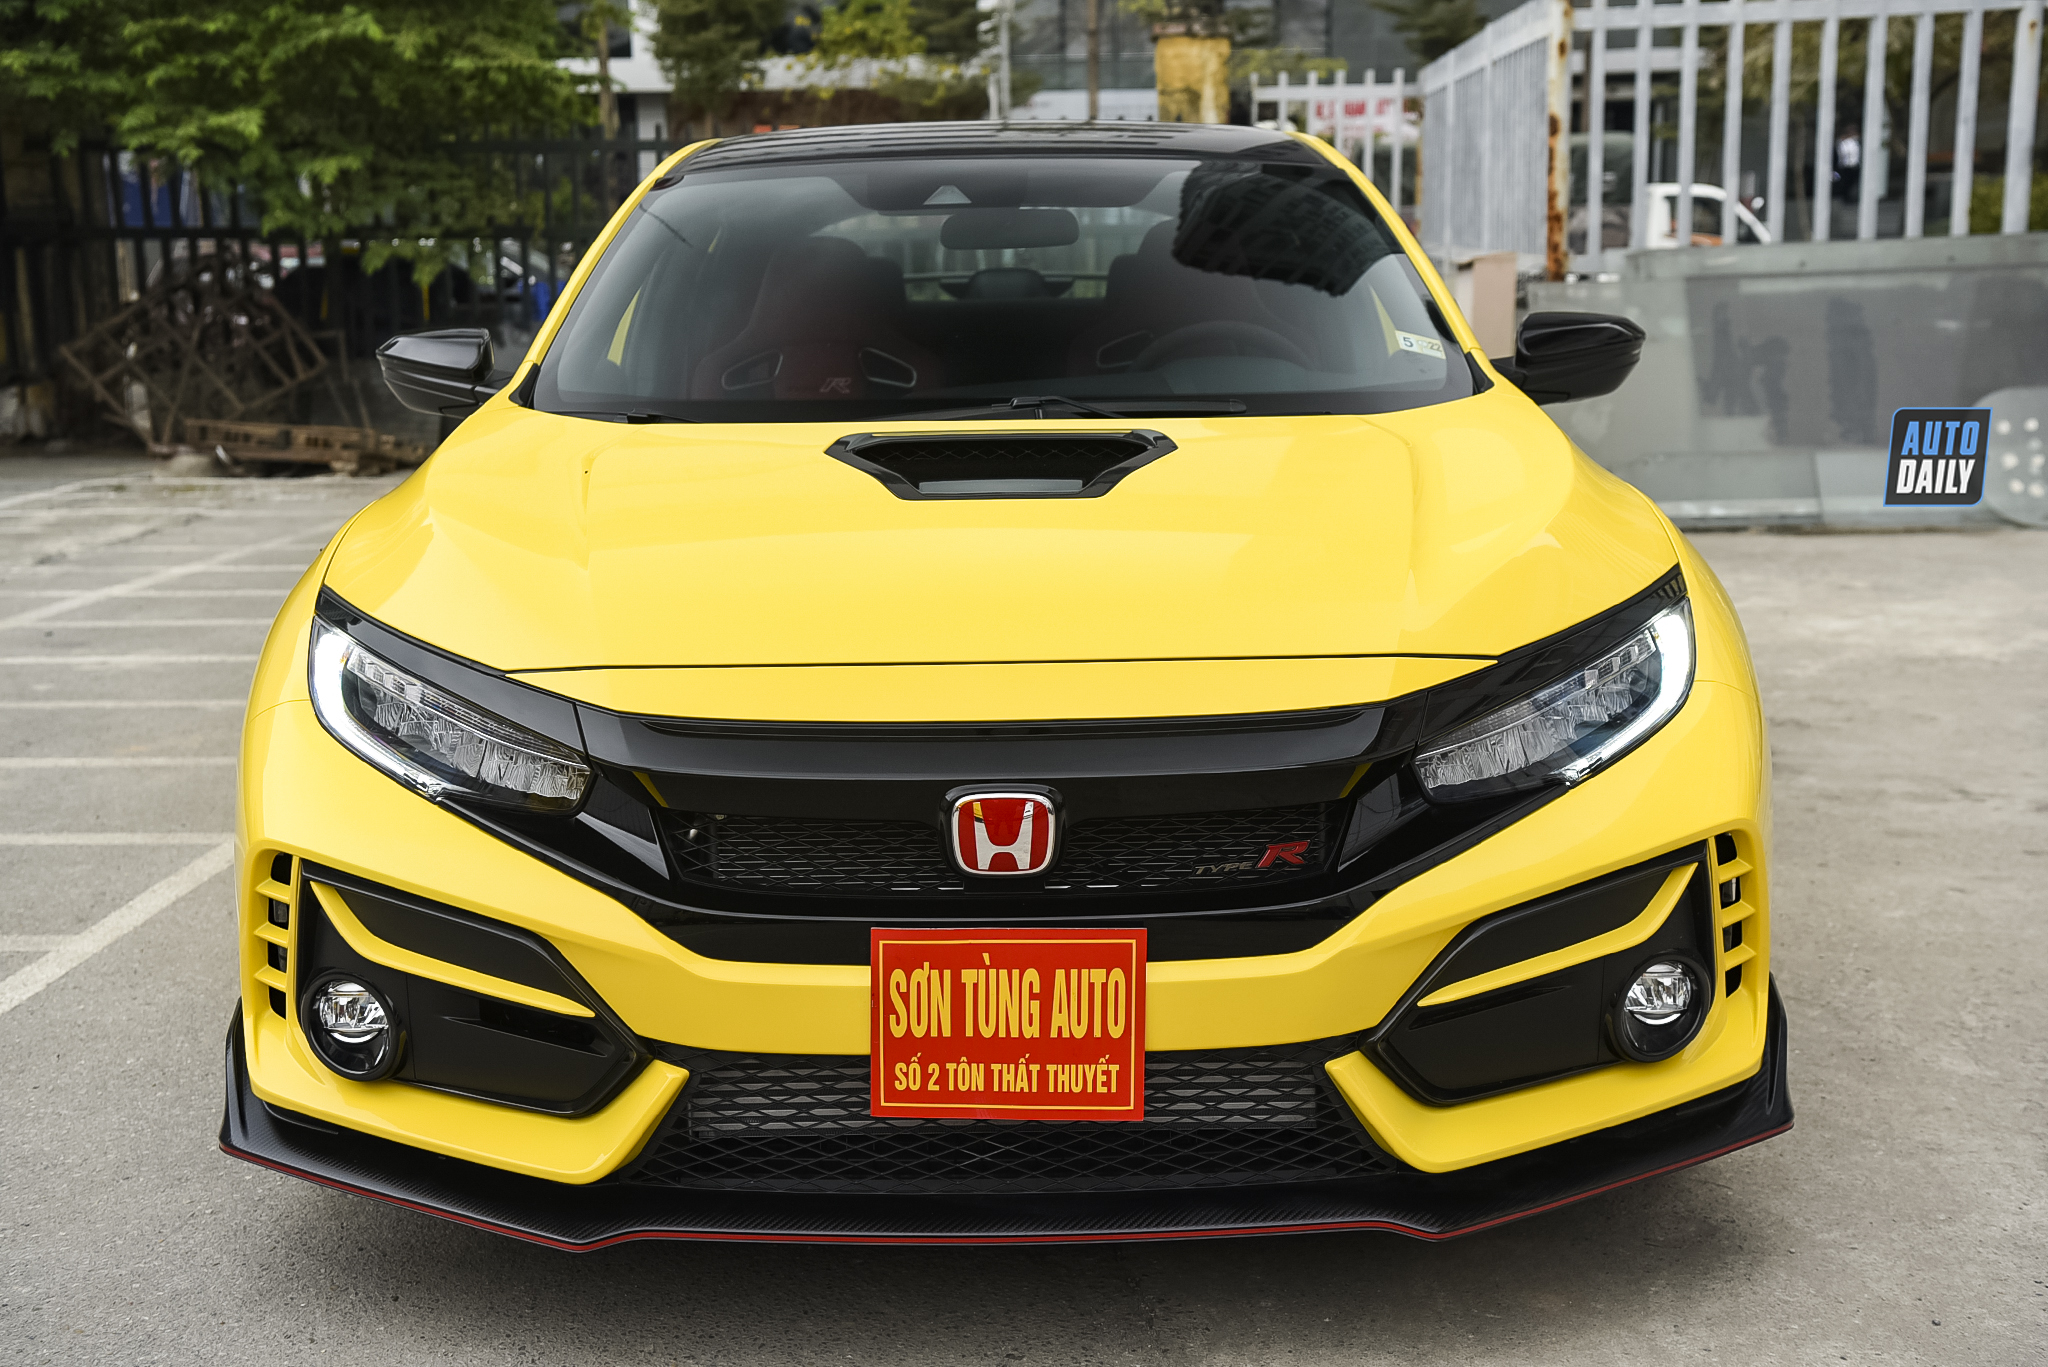 Chi tiết Honda Civic Type R Limited Edition 2021 độc nhất Việt Nam 3.jpg